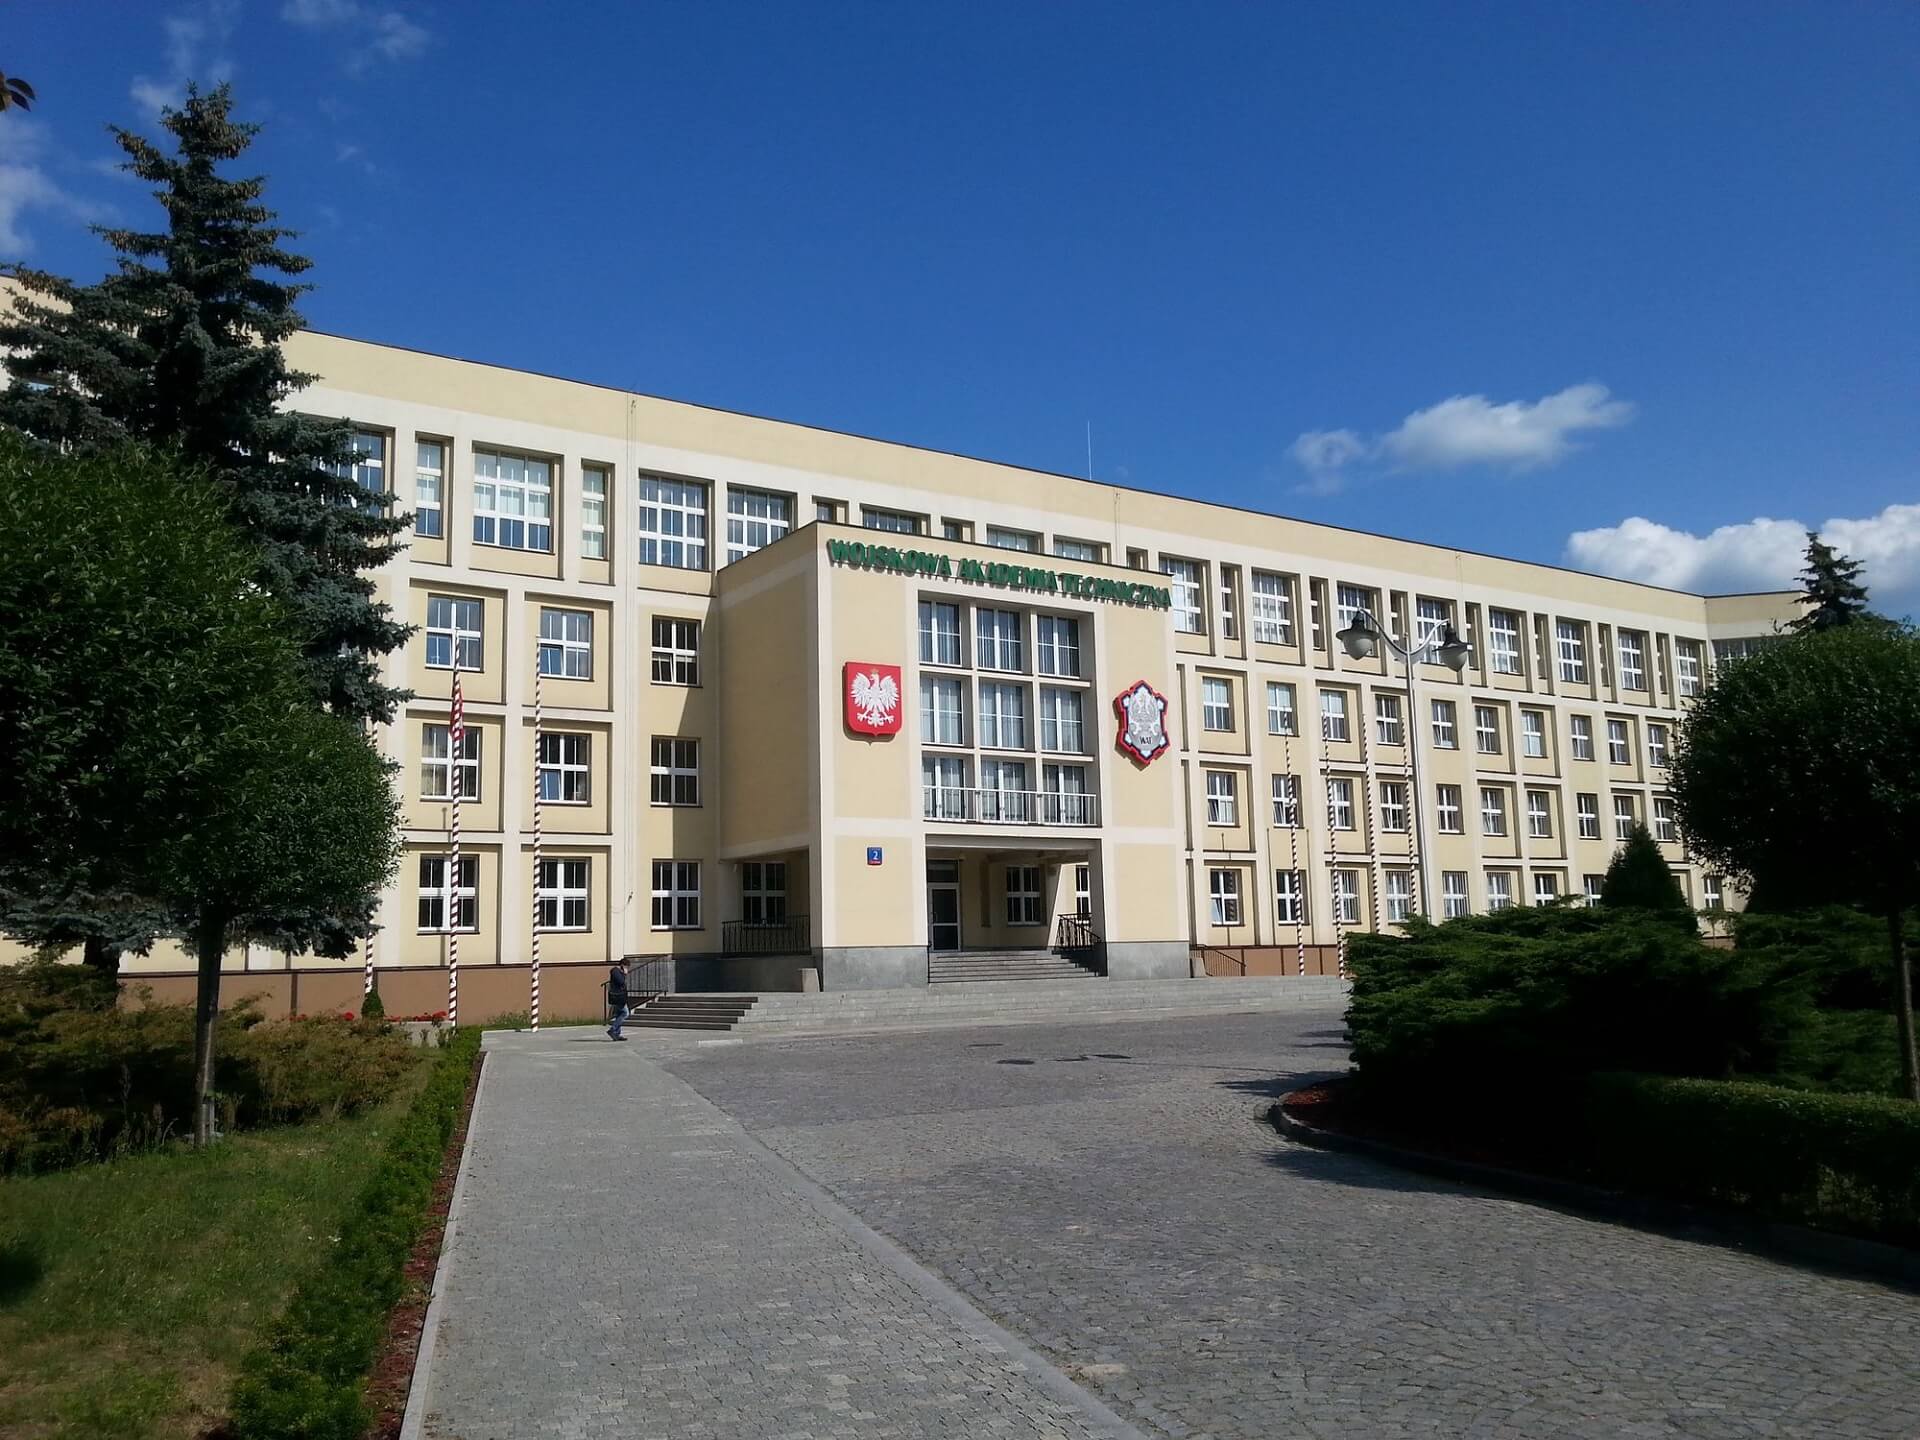 Gmach Wojskowej Akademii Technicznej w Warszawie